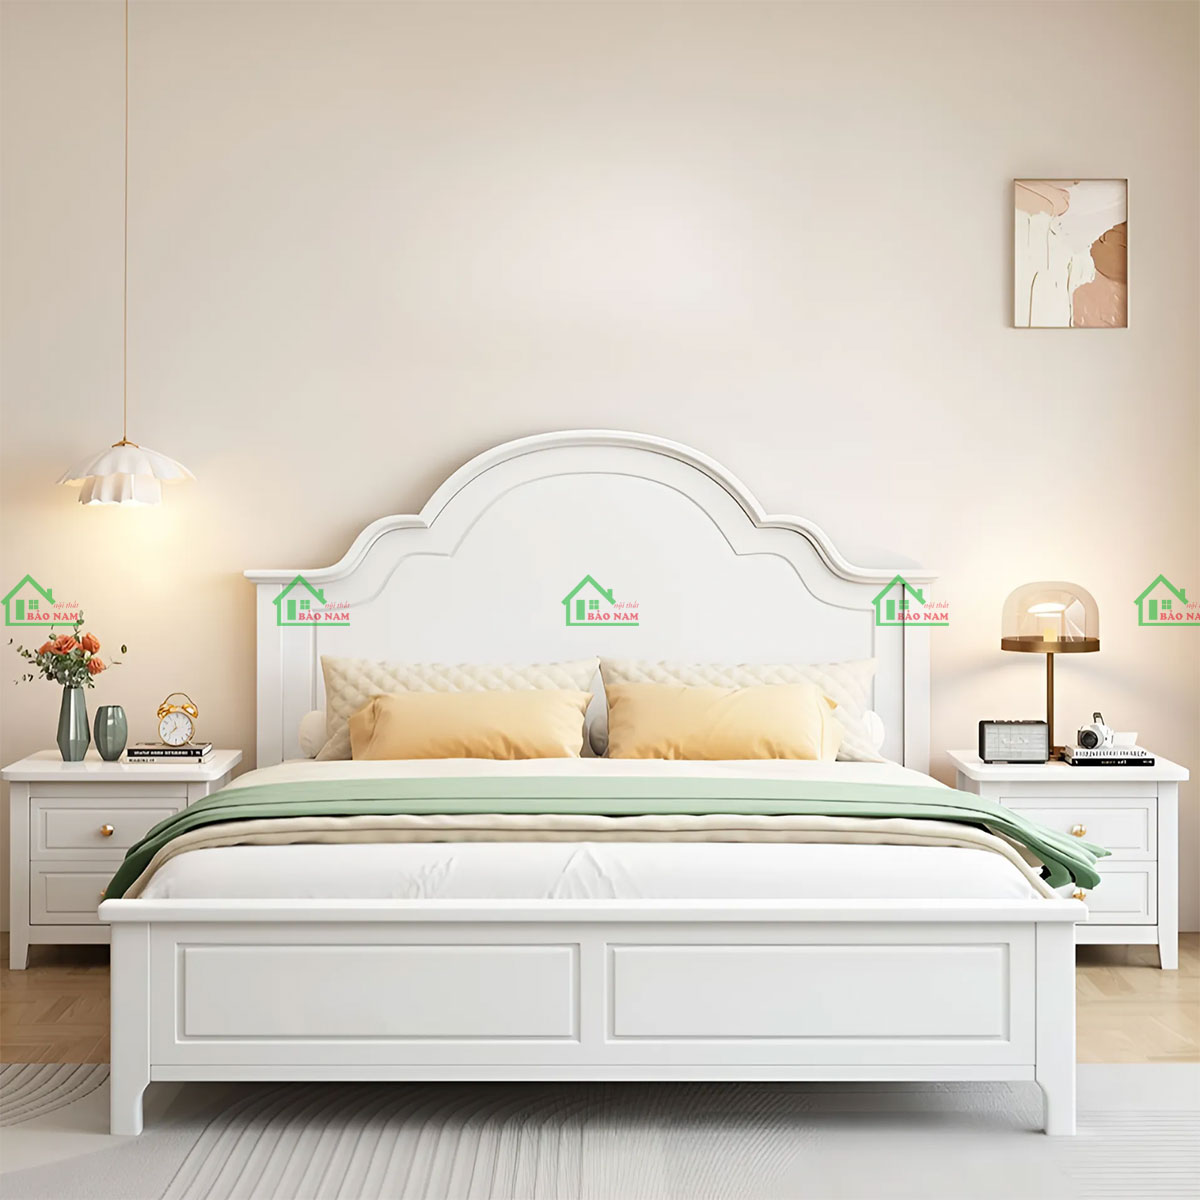 Giường ngủ gỗ tự nhiên phong cách Tân cổ điển